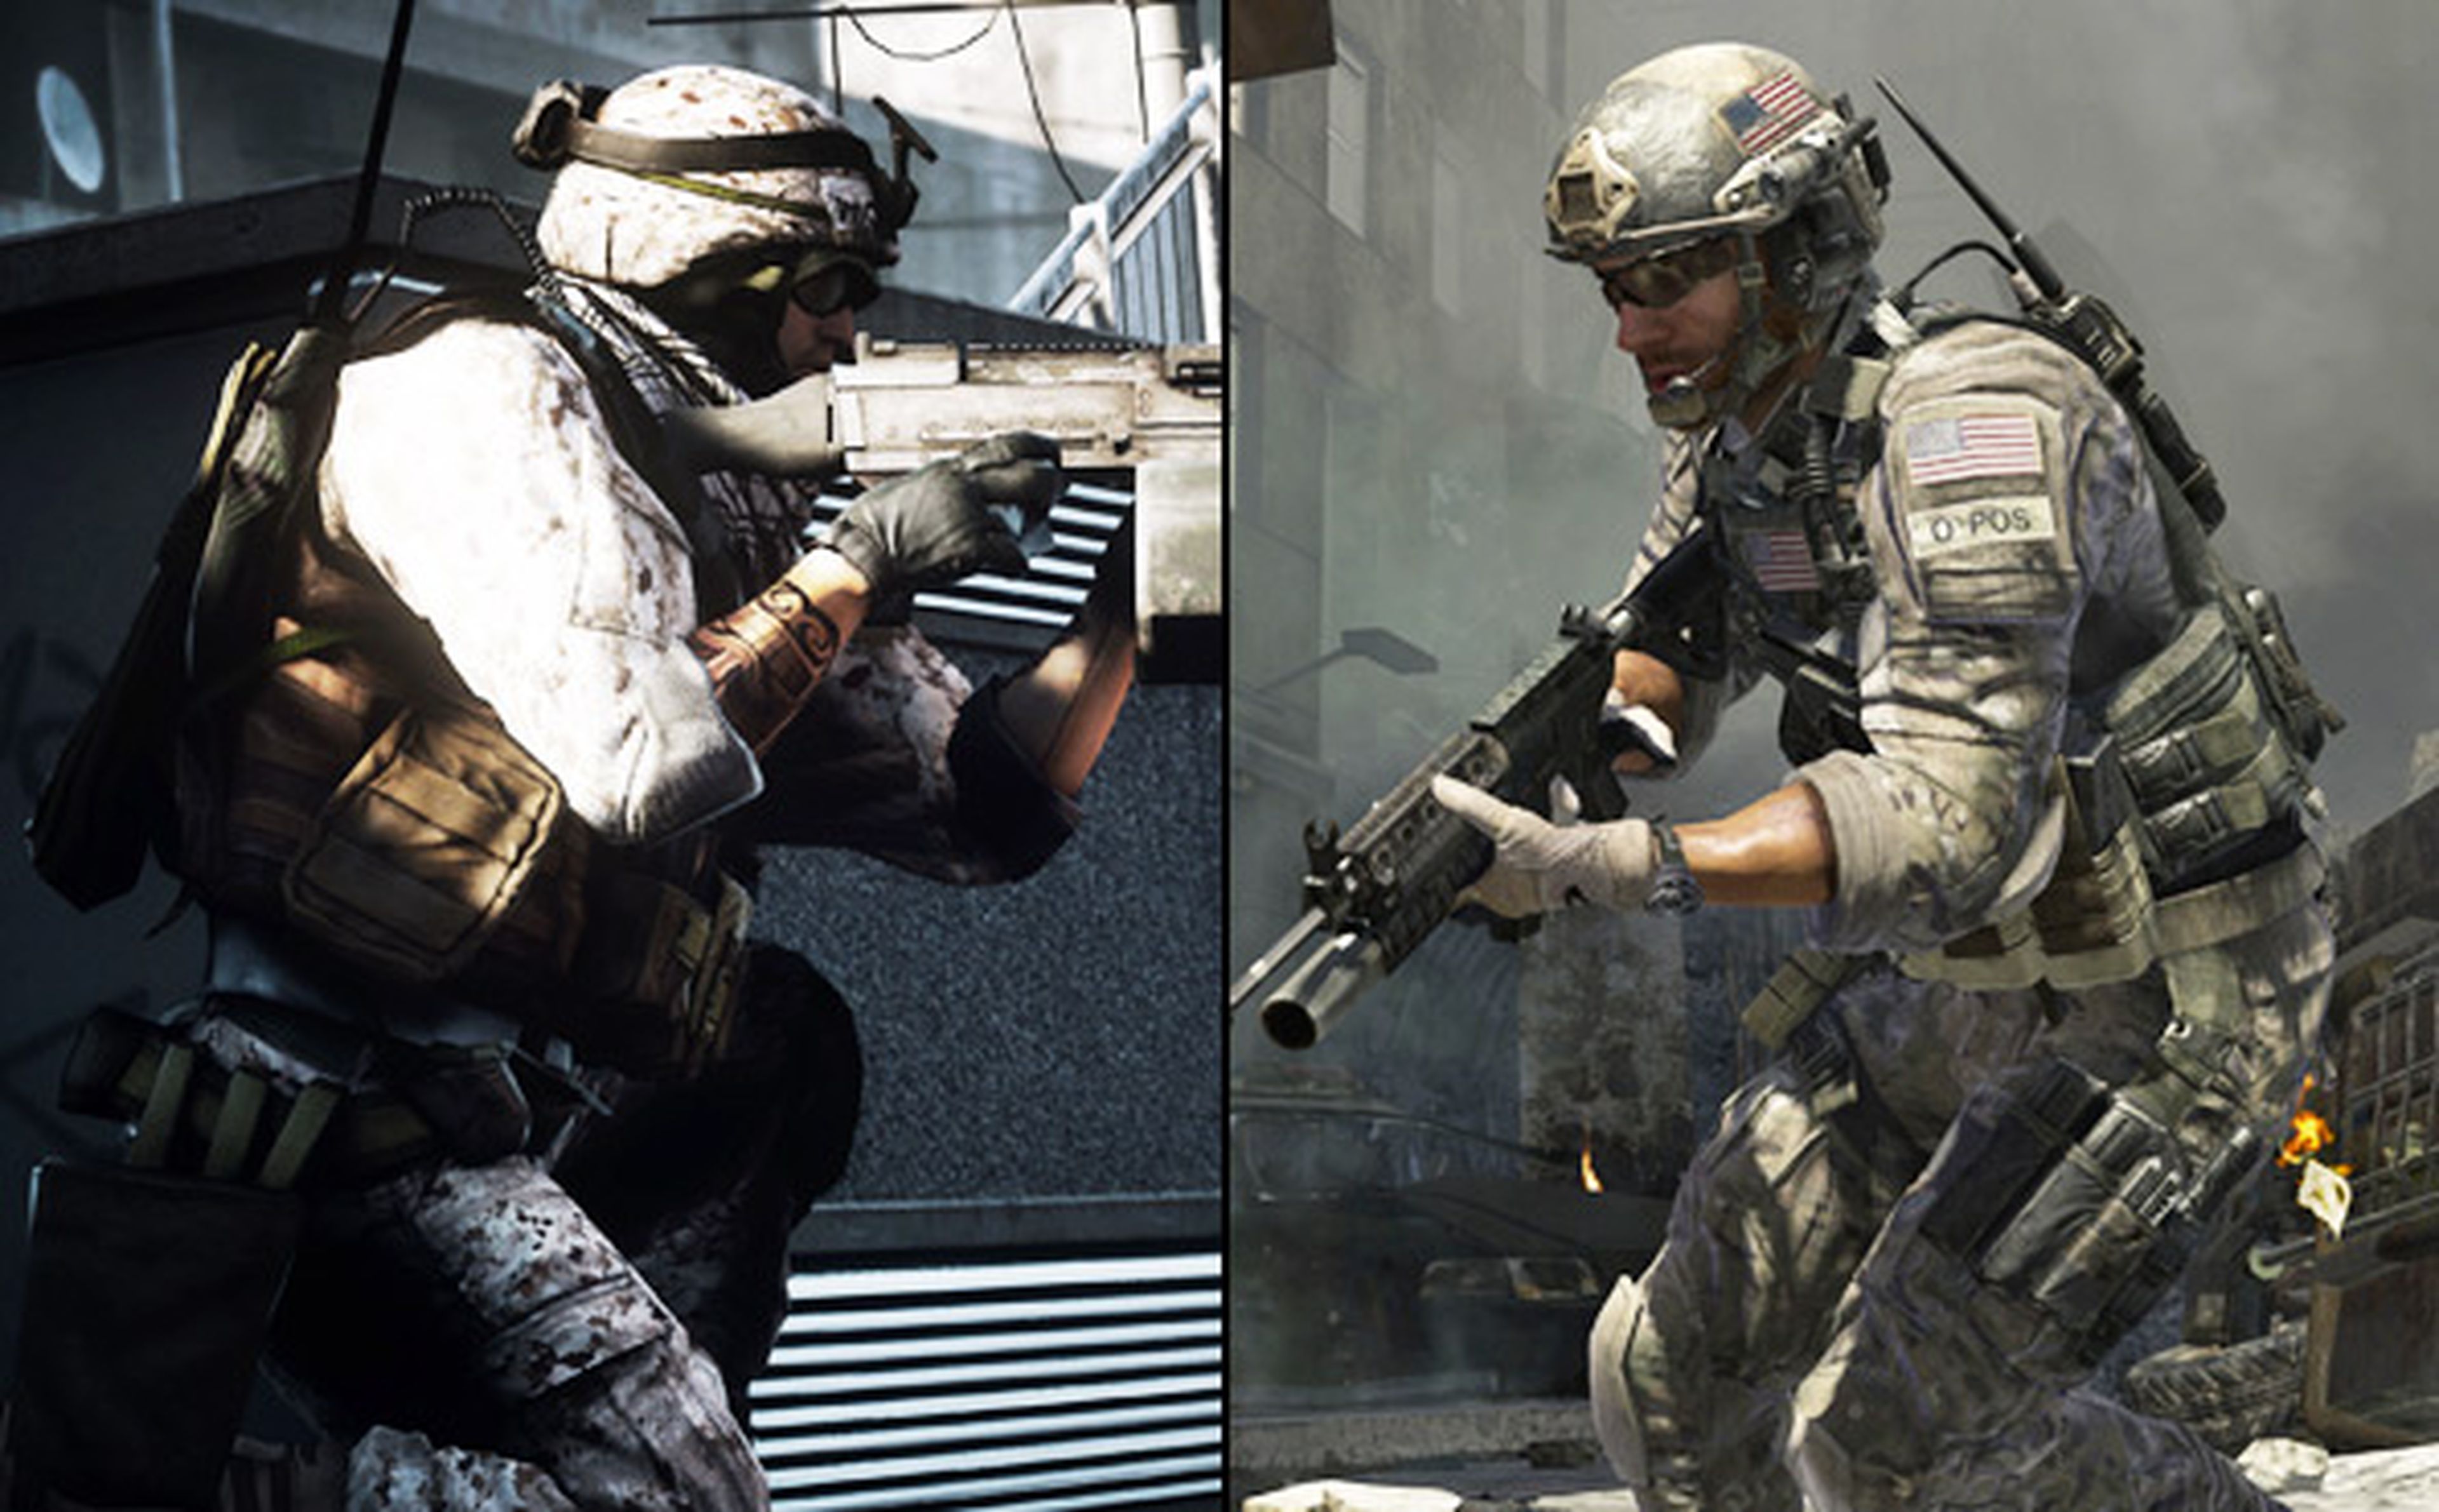 Battlefield 3 vs. Modern Warfare 3